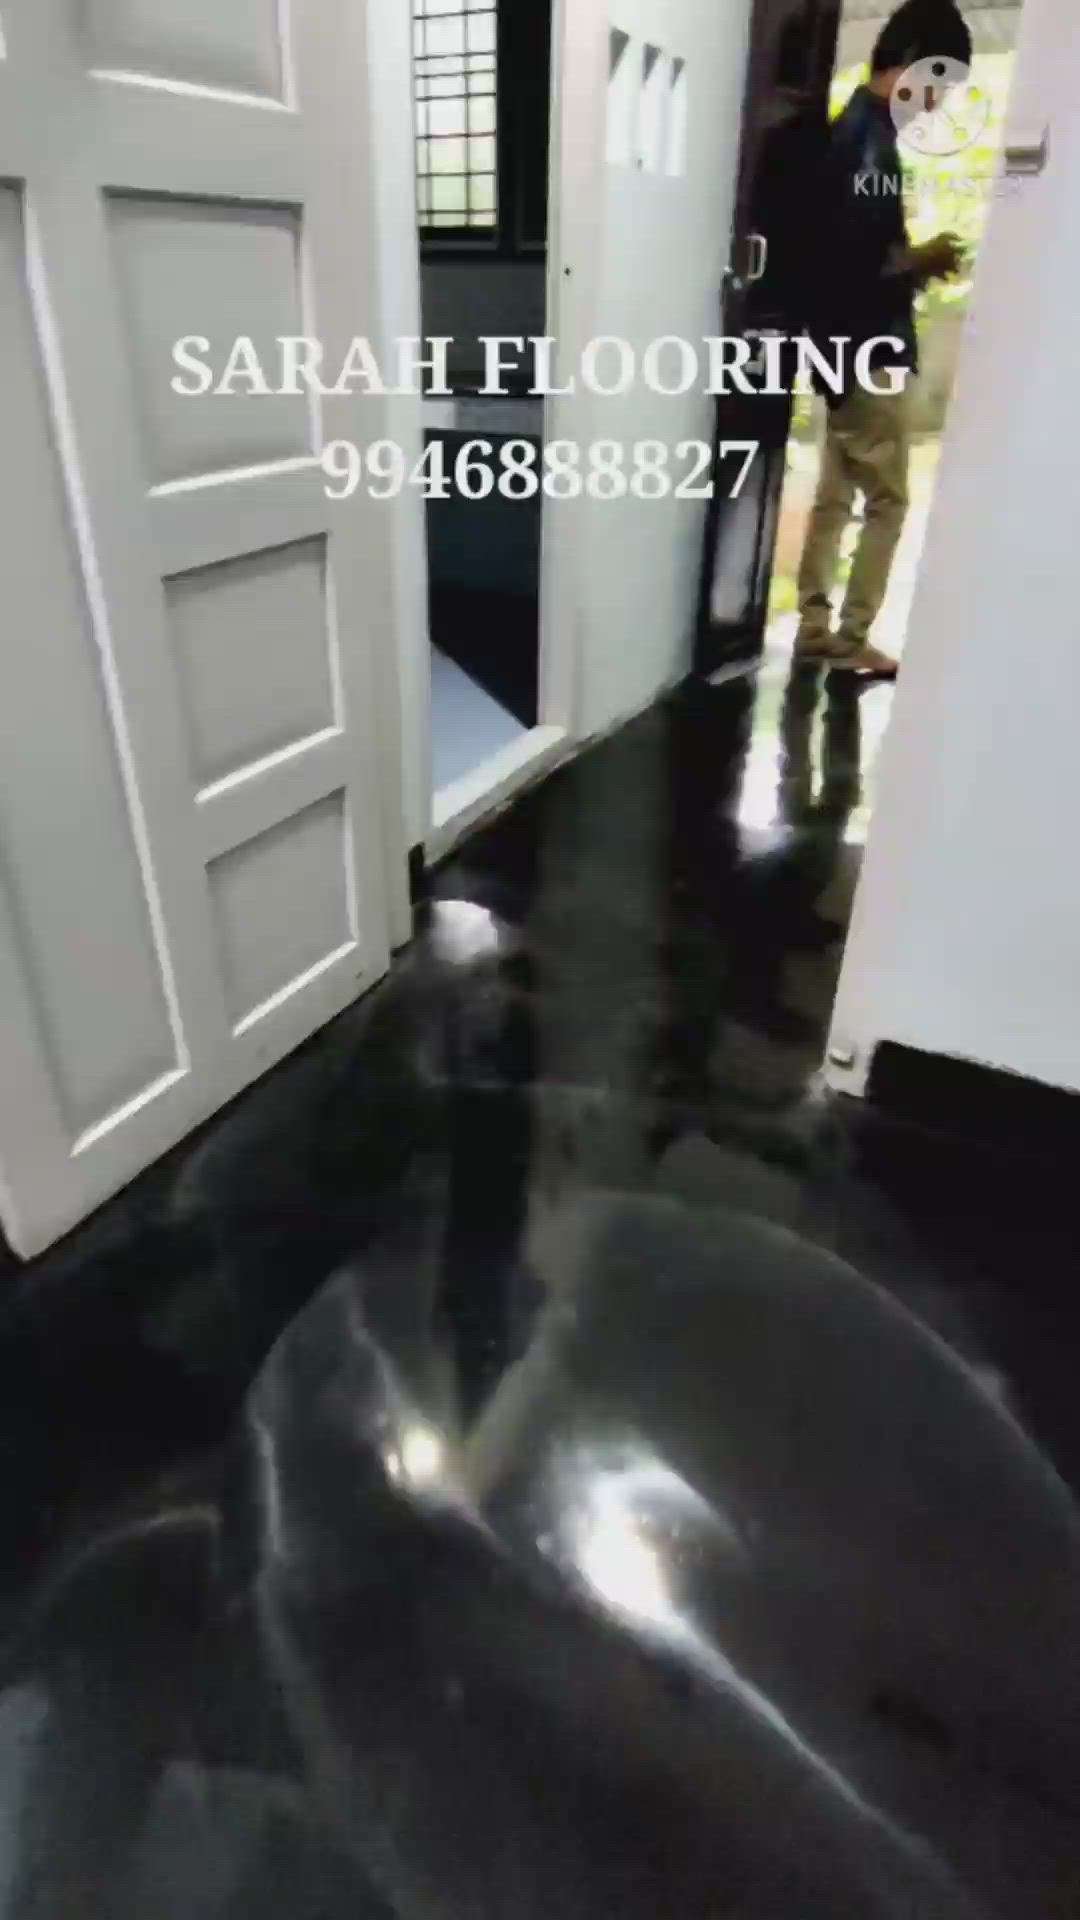 ബ്ലാക്ക് ഓക്സൈഡ് ഫ്ലോർ പോളിഷിംഗ്
black oxide floor Polishing